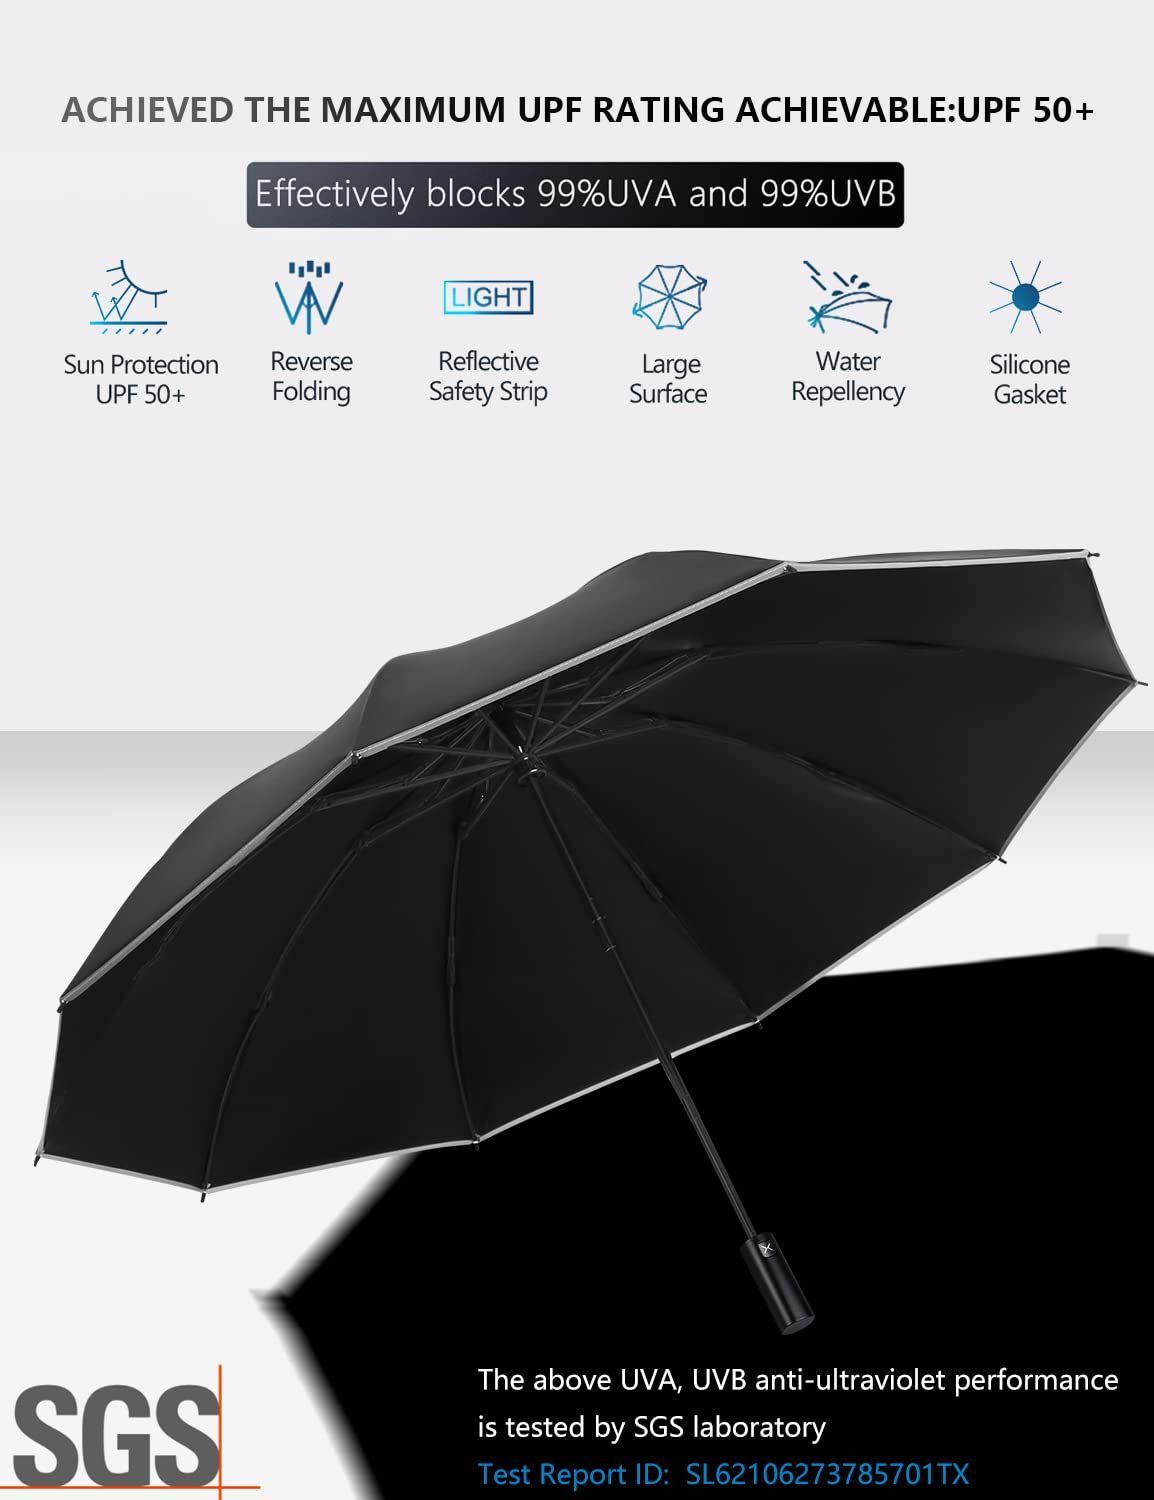 【数量限定】UPF | 50+ Plus 99％UV保護、強力な金属シャフト、頑丈な防風、トラベルポータブル| Umbrella 自動折りたたみ傘 XIXVON